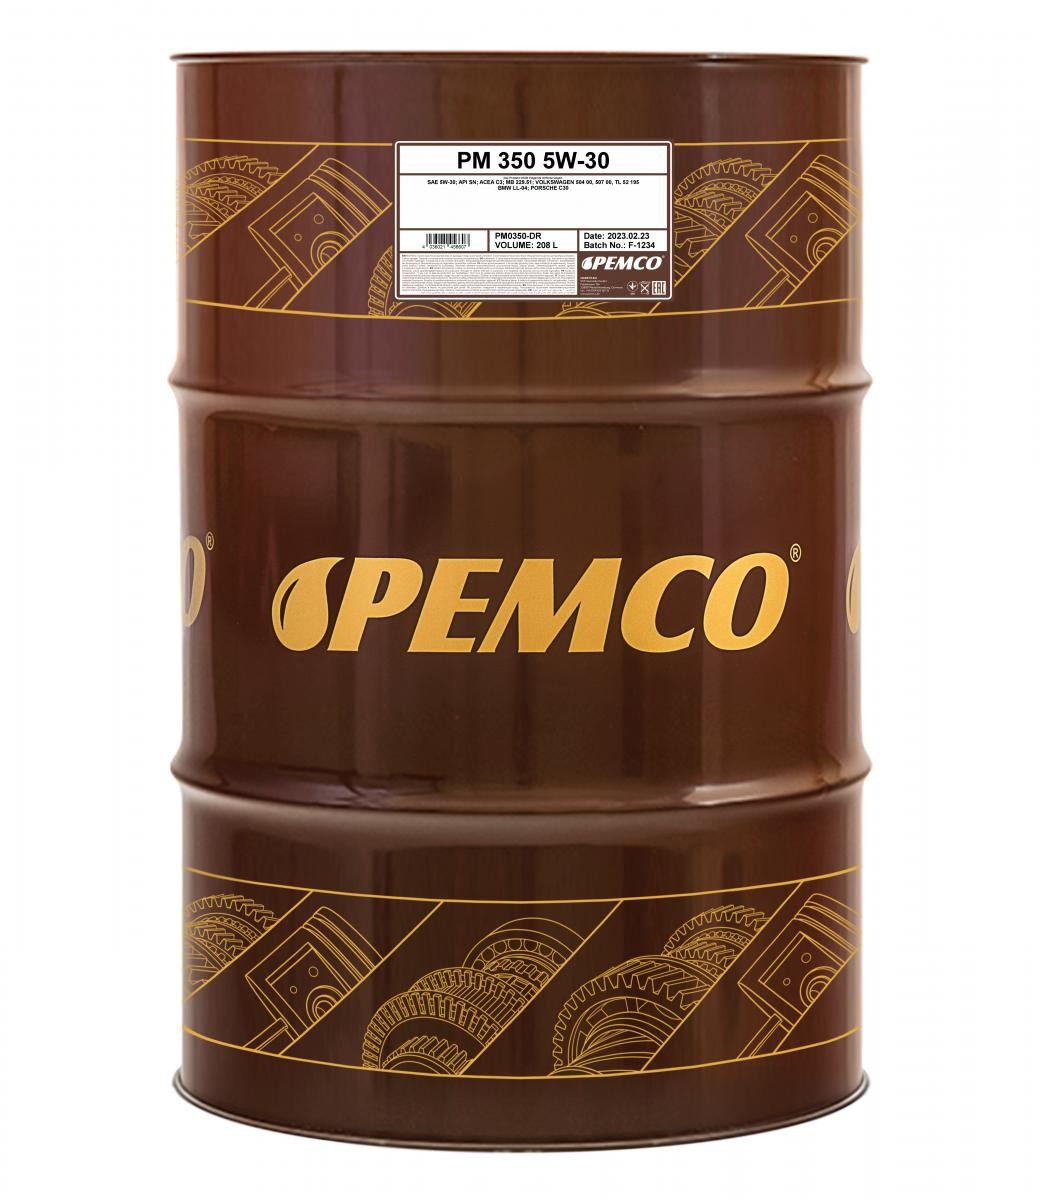 PM0350-DR PEMCO iDRIVE 300, iDRIVE 350 5W-30, 208l Motoröl PM0350-DR günstig kaufen